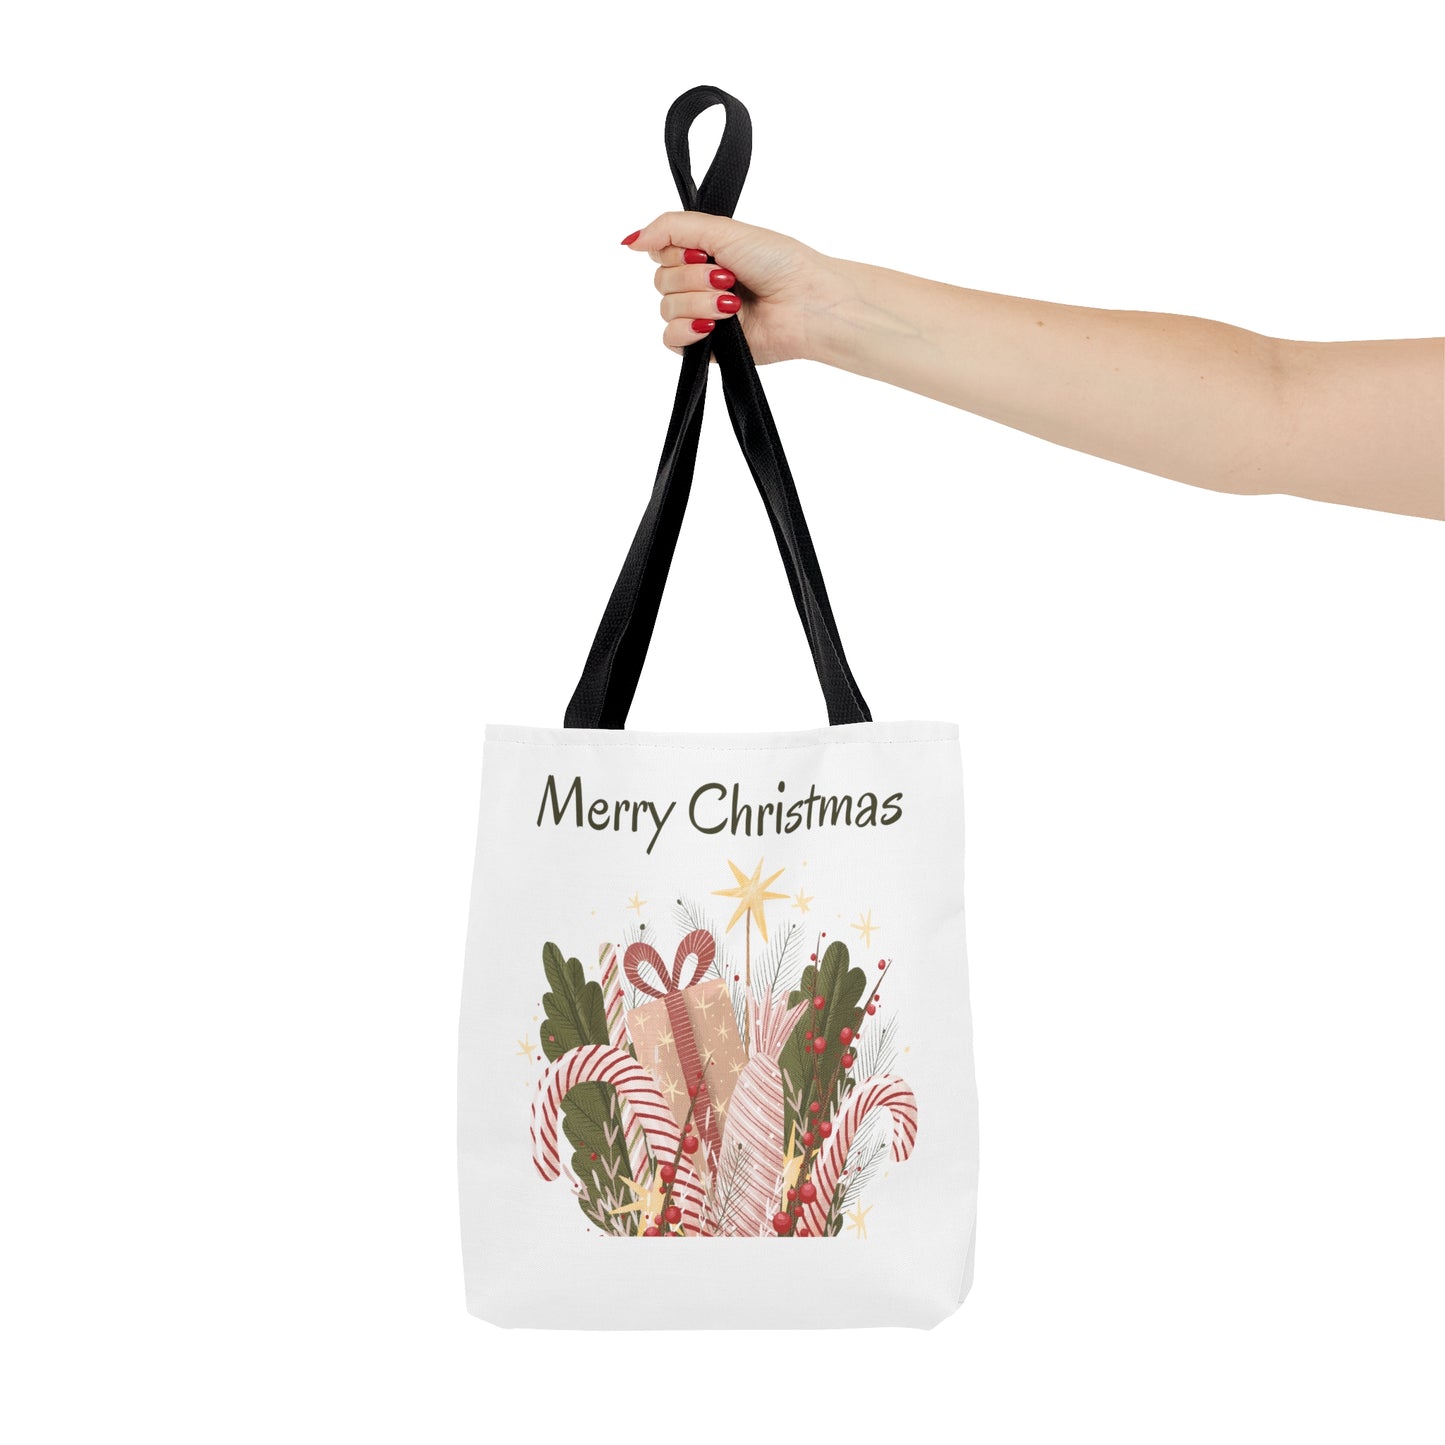 Merry Christmas Gift Printed Tote Bags, Reusable Tote Bag